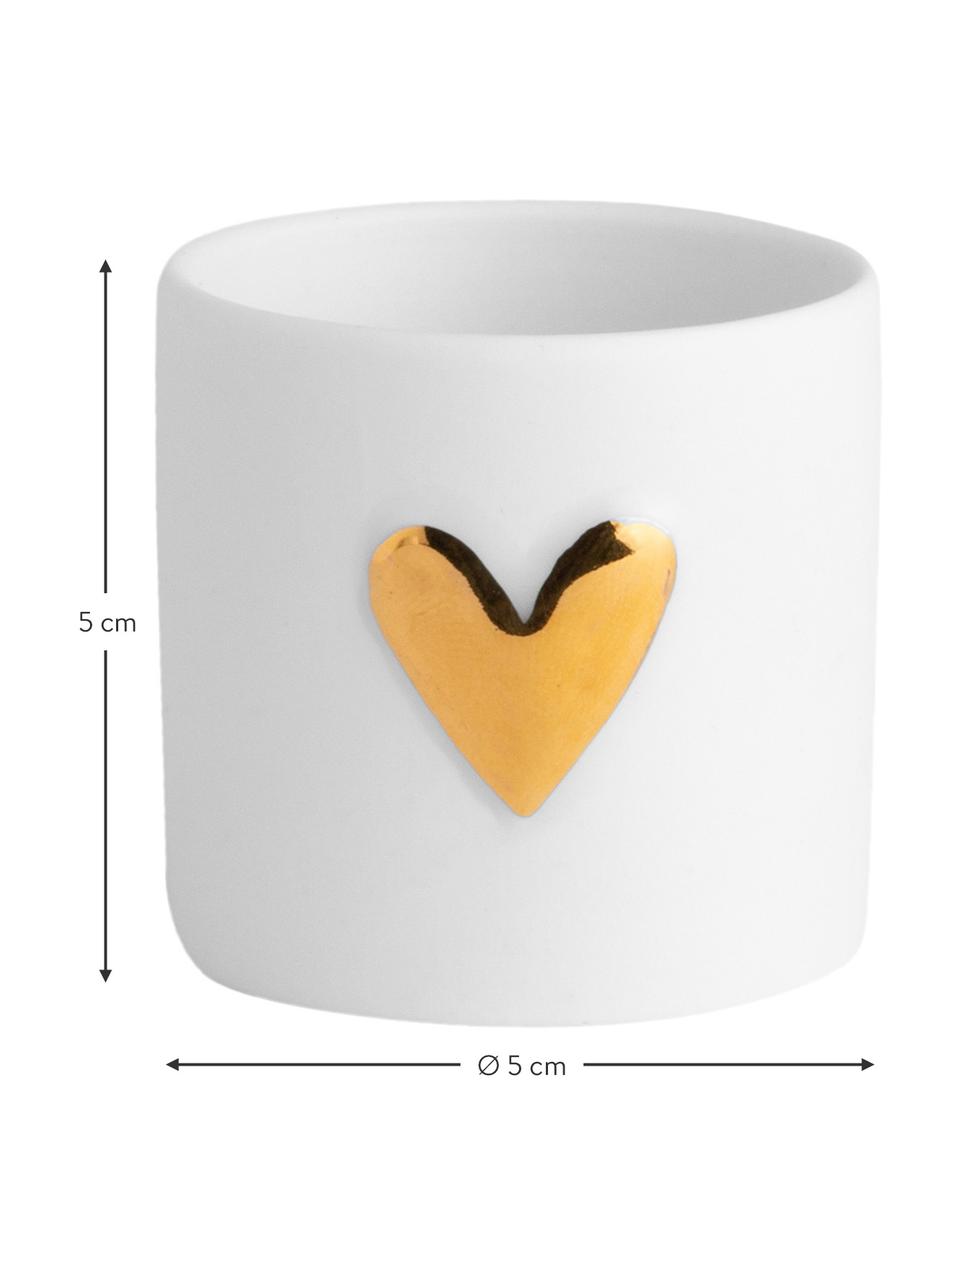 Kleiner Porzellan-Teelichthalter Heart, 2 Stück, Porzellan, Weiß, Goldfarben, Ø 5 x H 5 cm